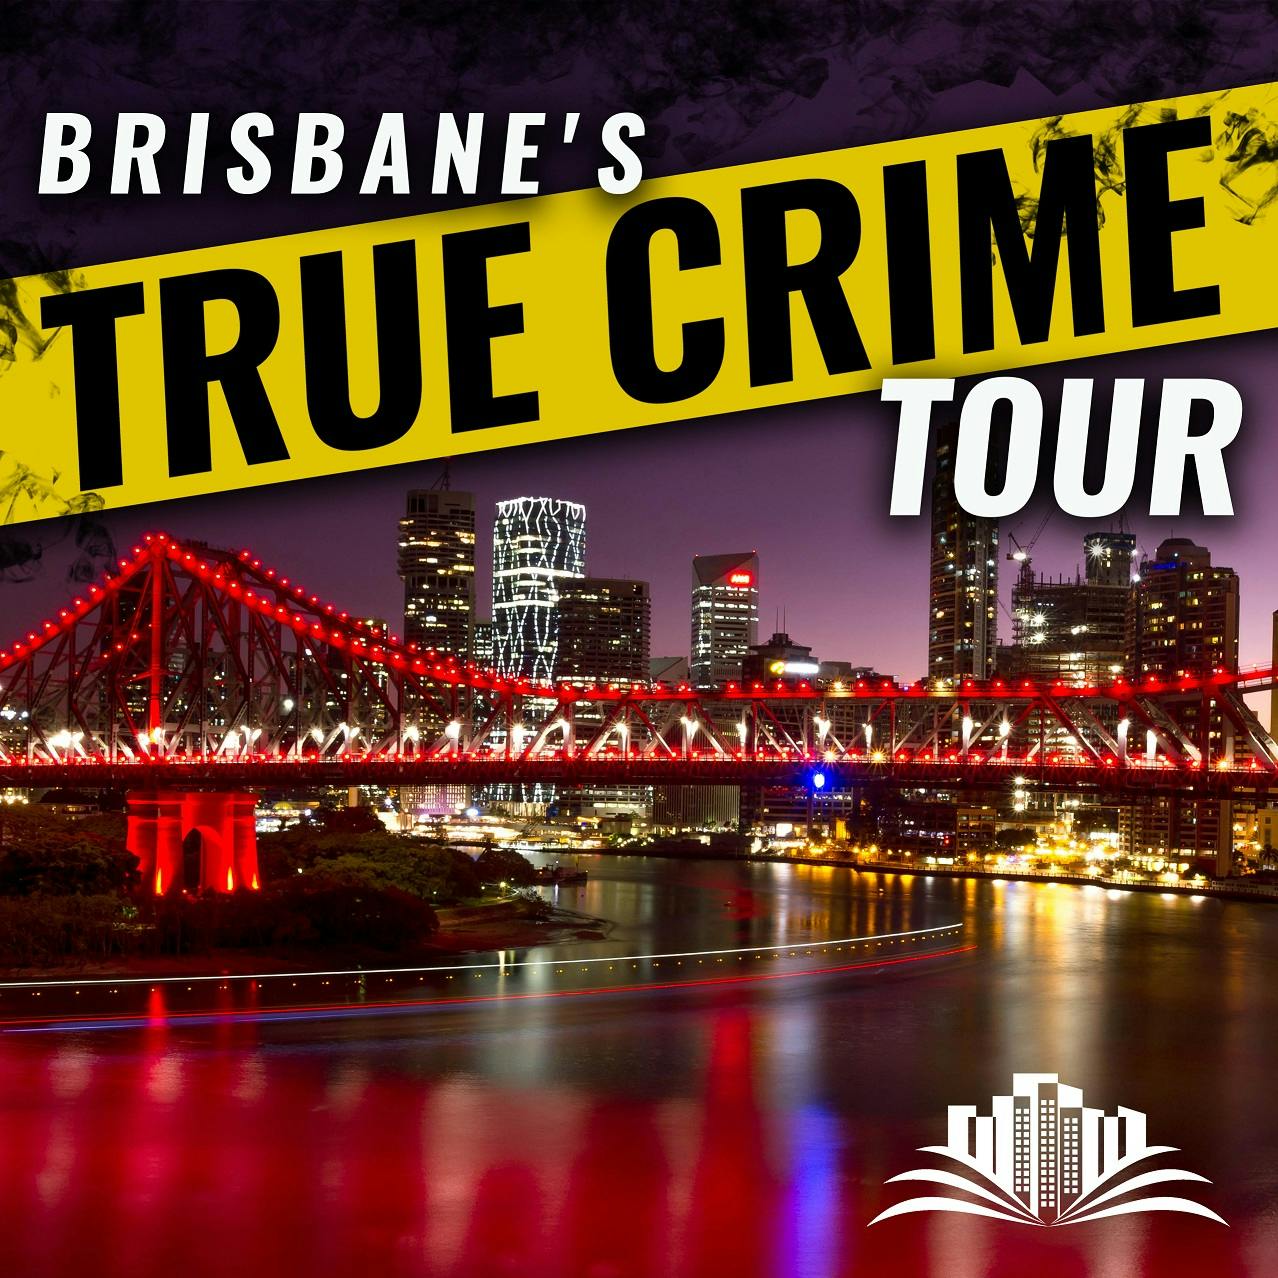 La gira de historias oscuras sobre crímenes reales de Brisbane